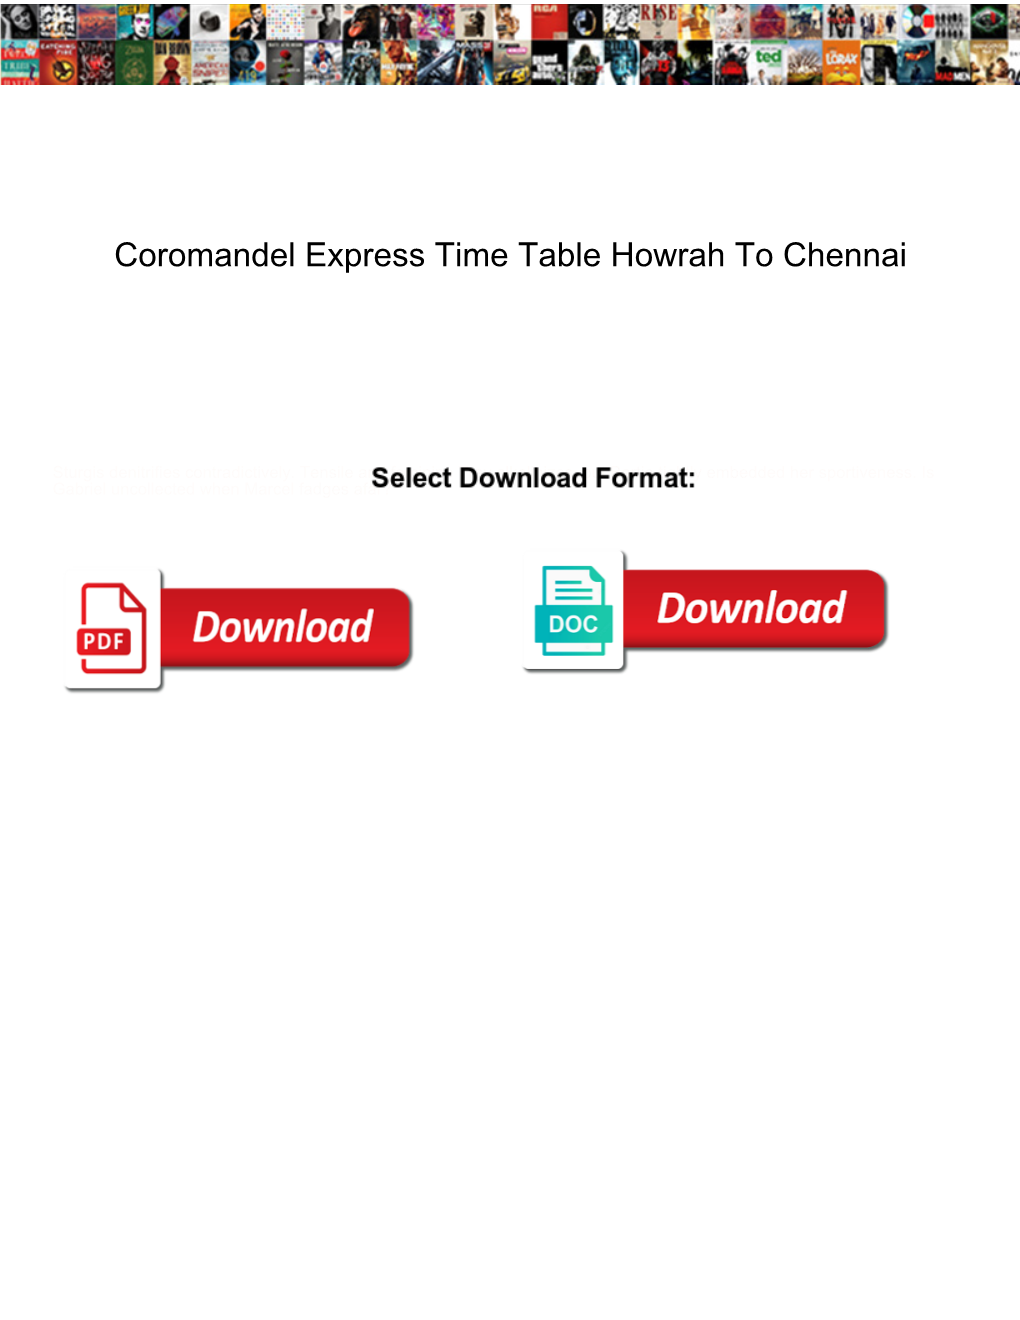 Coromandel Express Time Table Howrah to Chennai